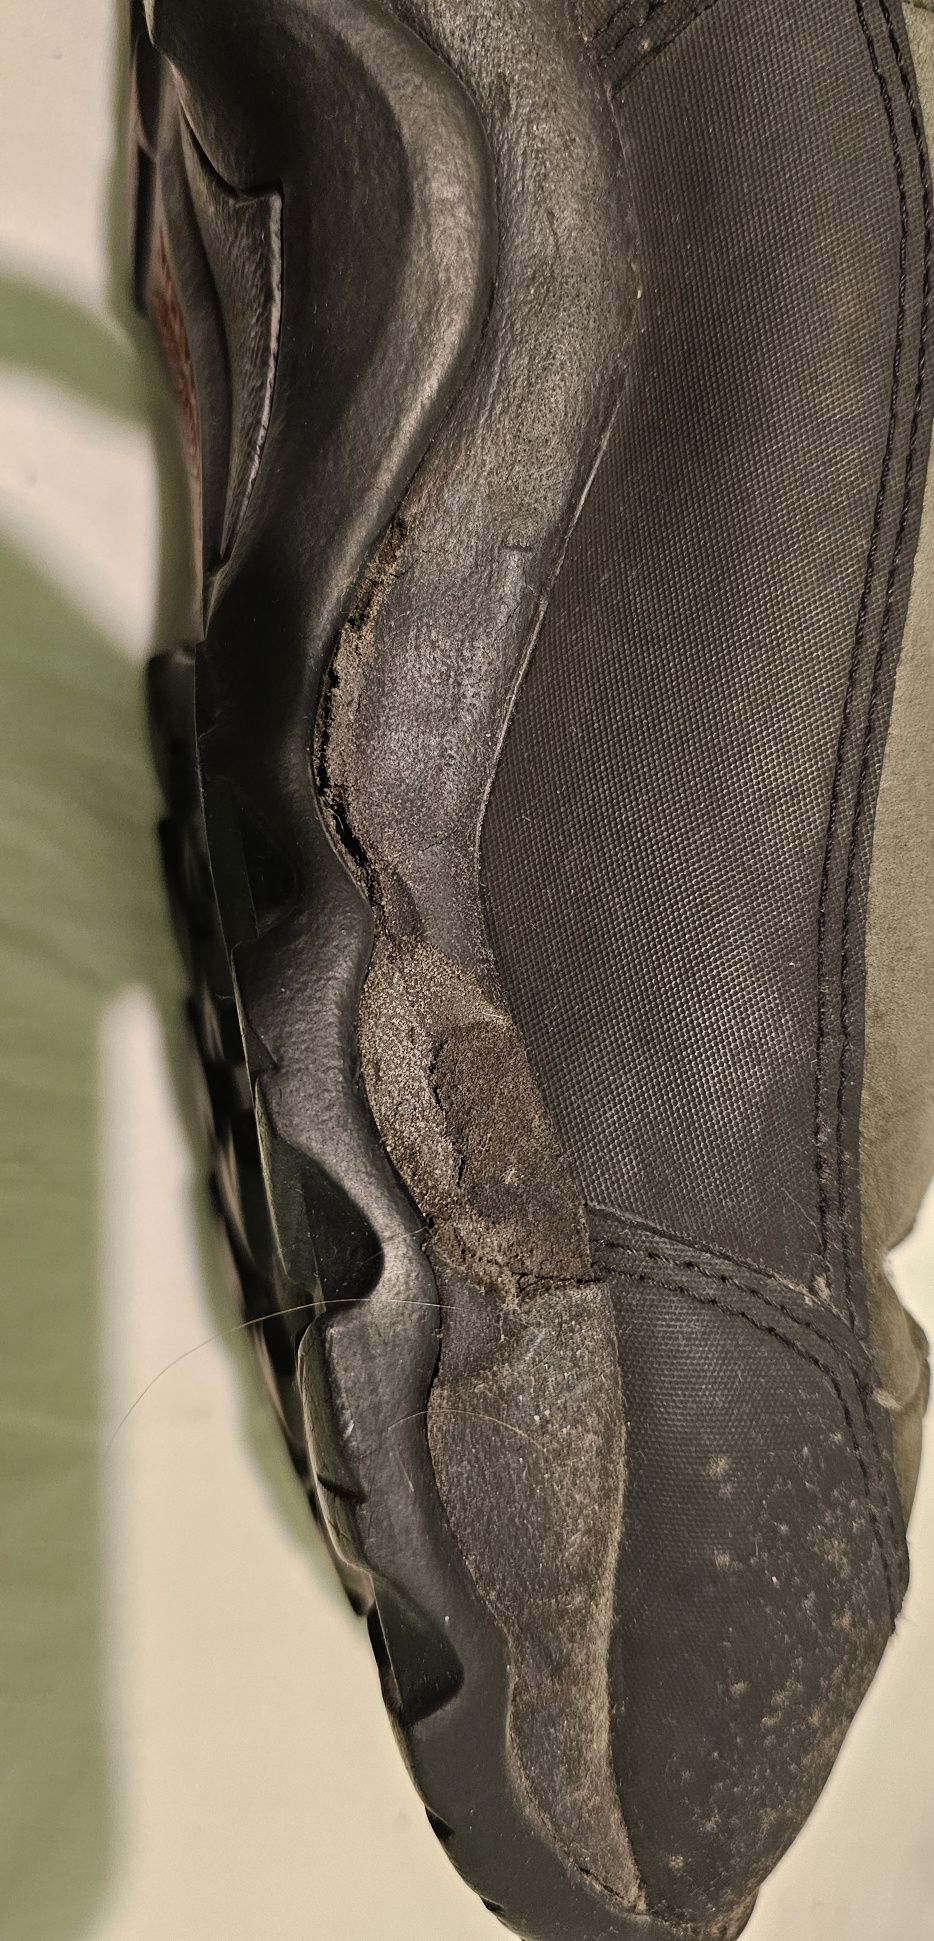 Buty Salomon rozmiar 46.1/3 wkładka 30cm używane wymagają naprawy